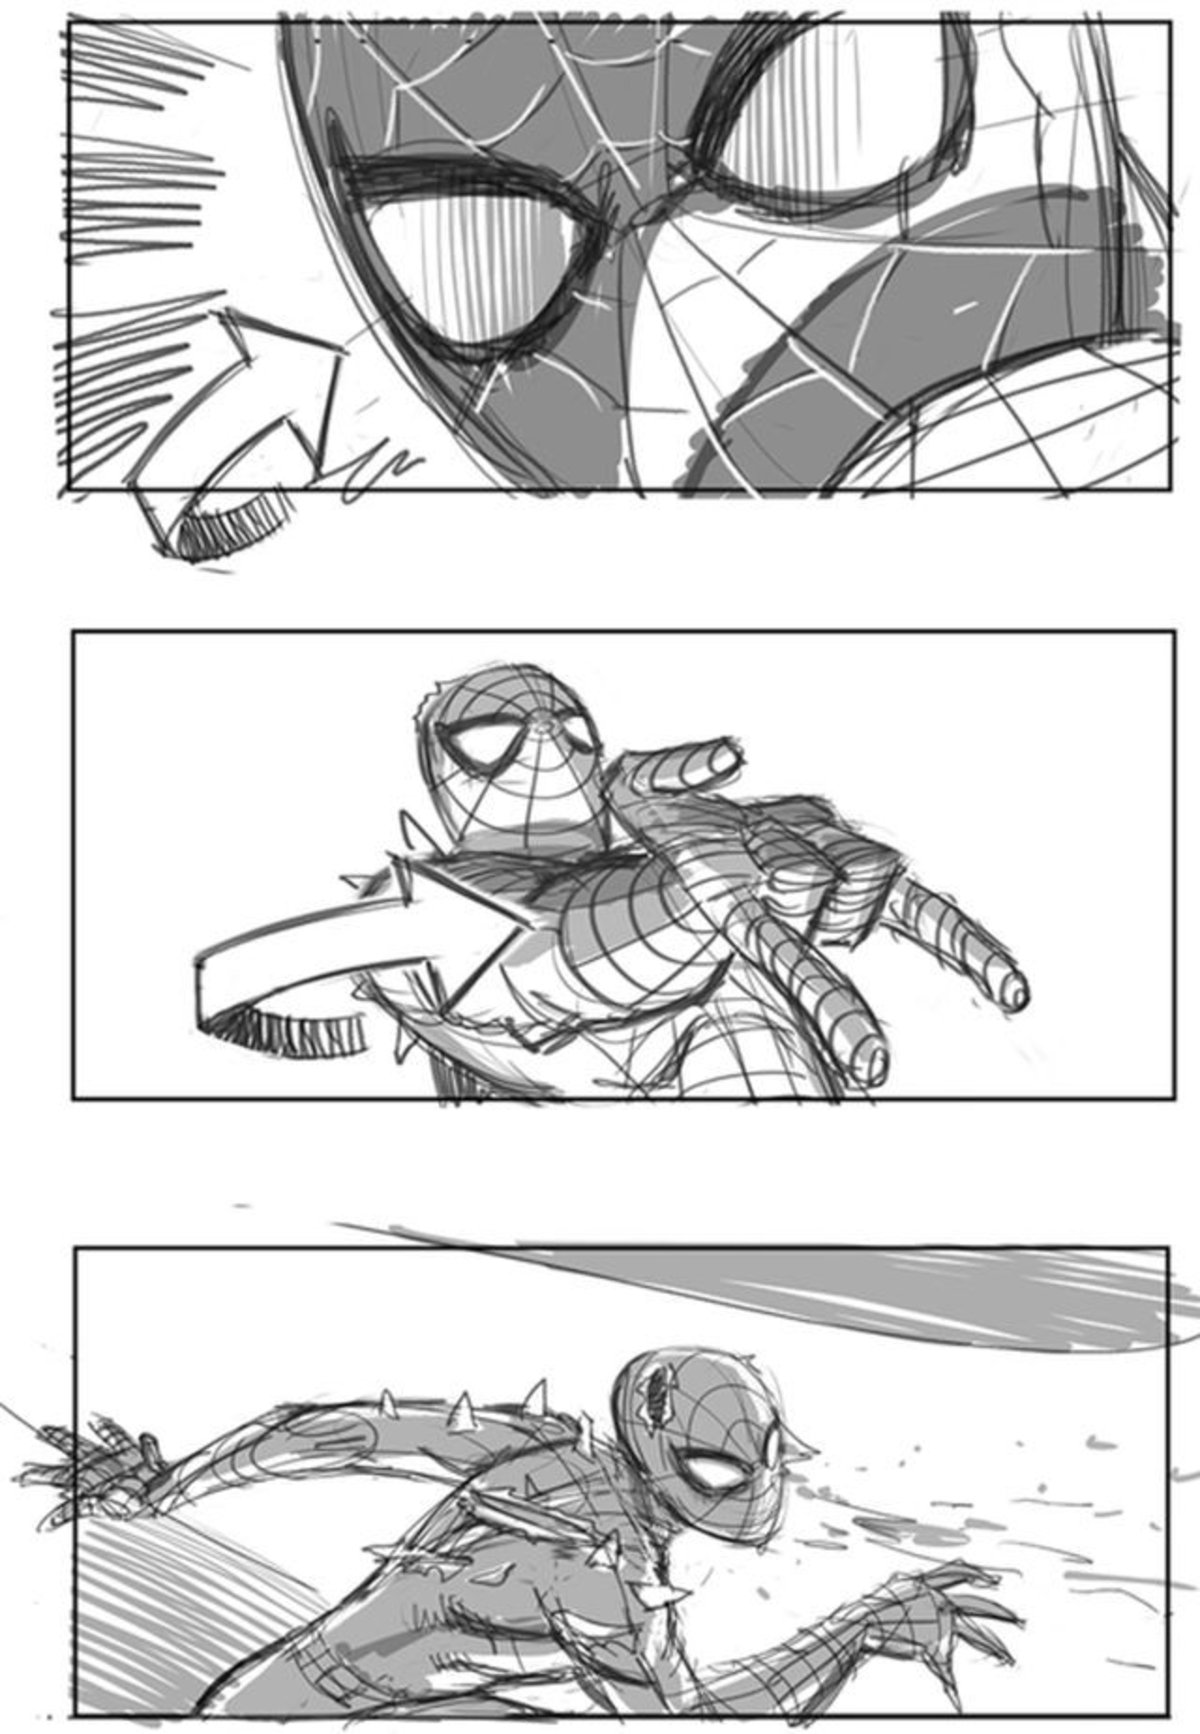 Spiderman 4 de Sam Raimi tenía estos storyboards